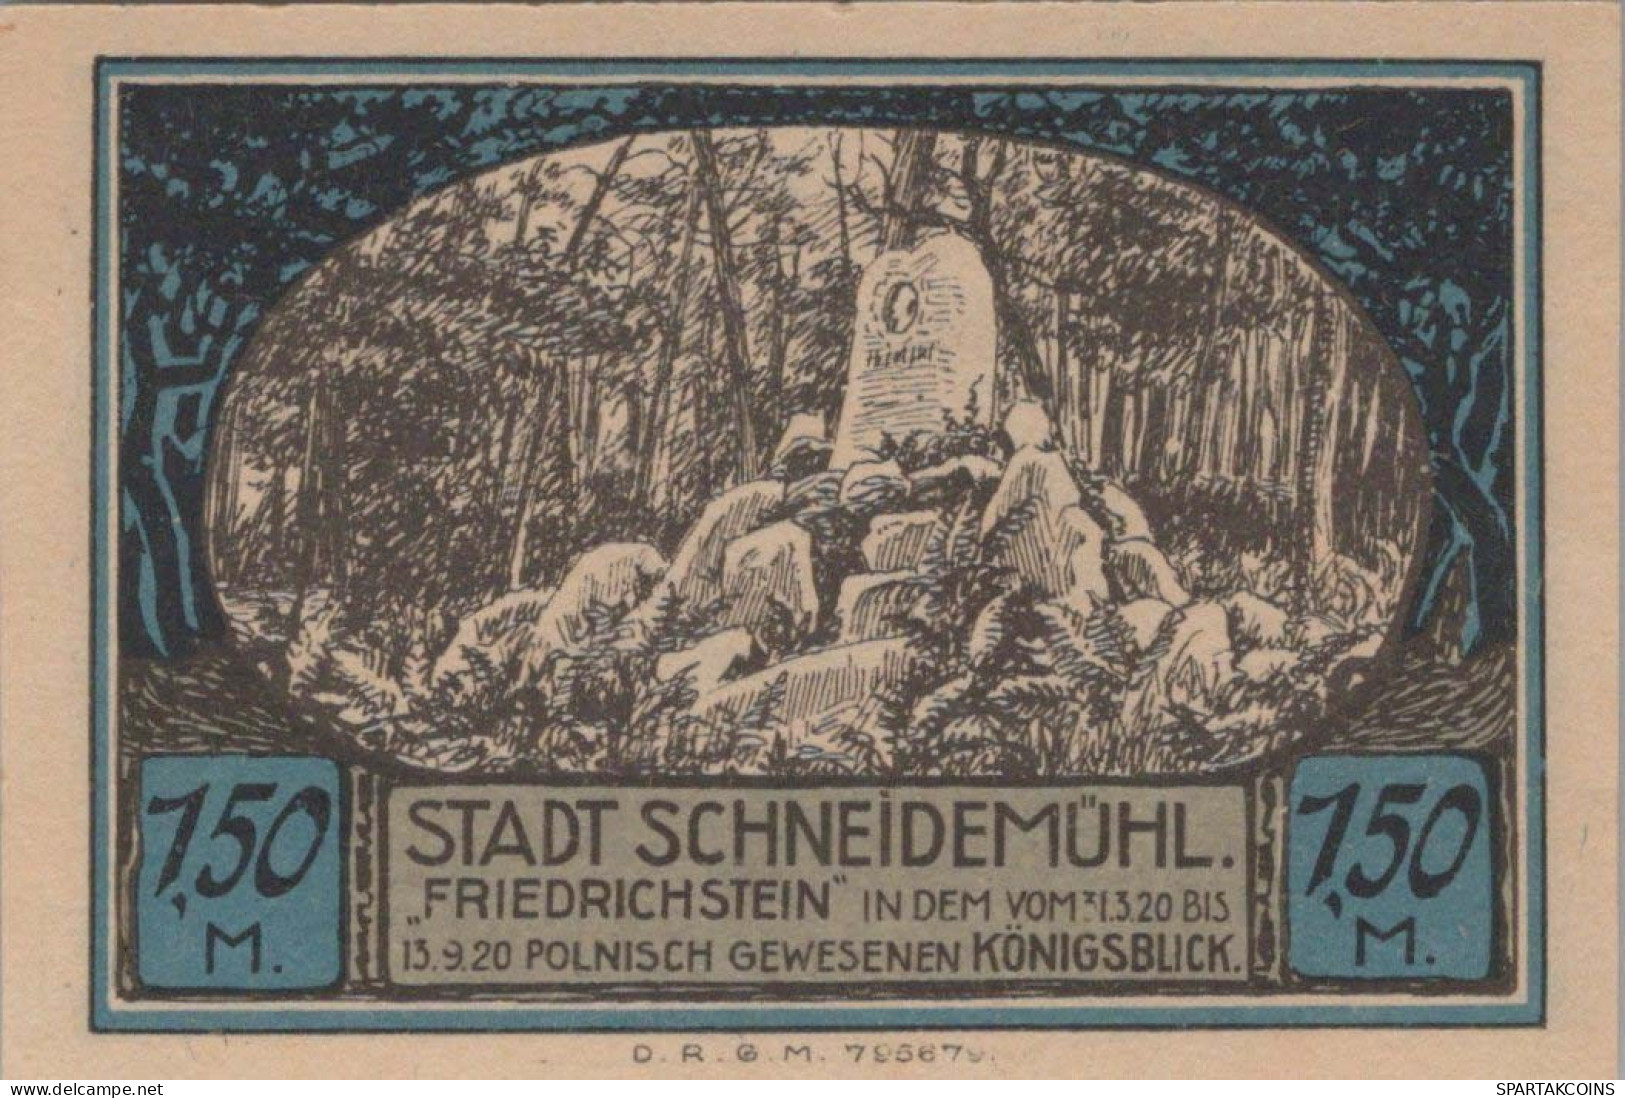 1.5 MARK 1914-1924 Stadt SCHNEIDEMÜHL Posen UNC DEUTSCHLAND Notgeld #PD308 - [11] Emissions Locales